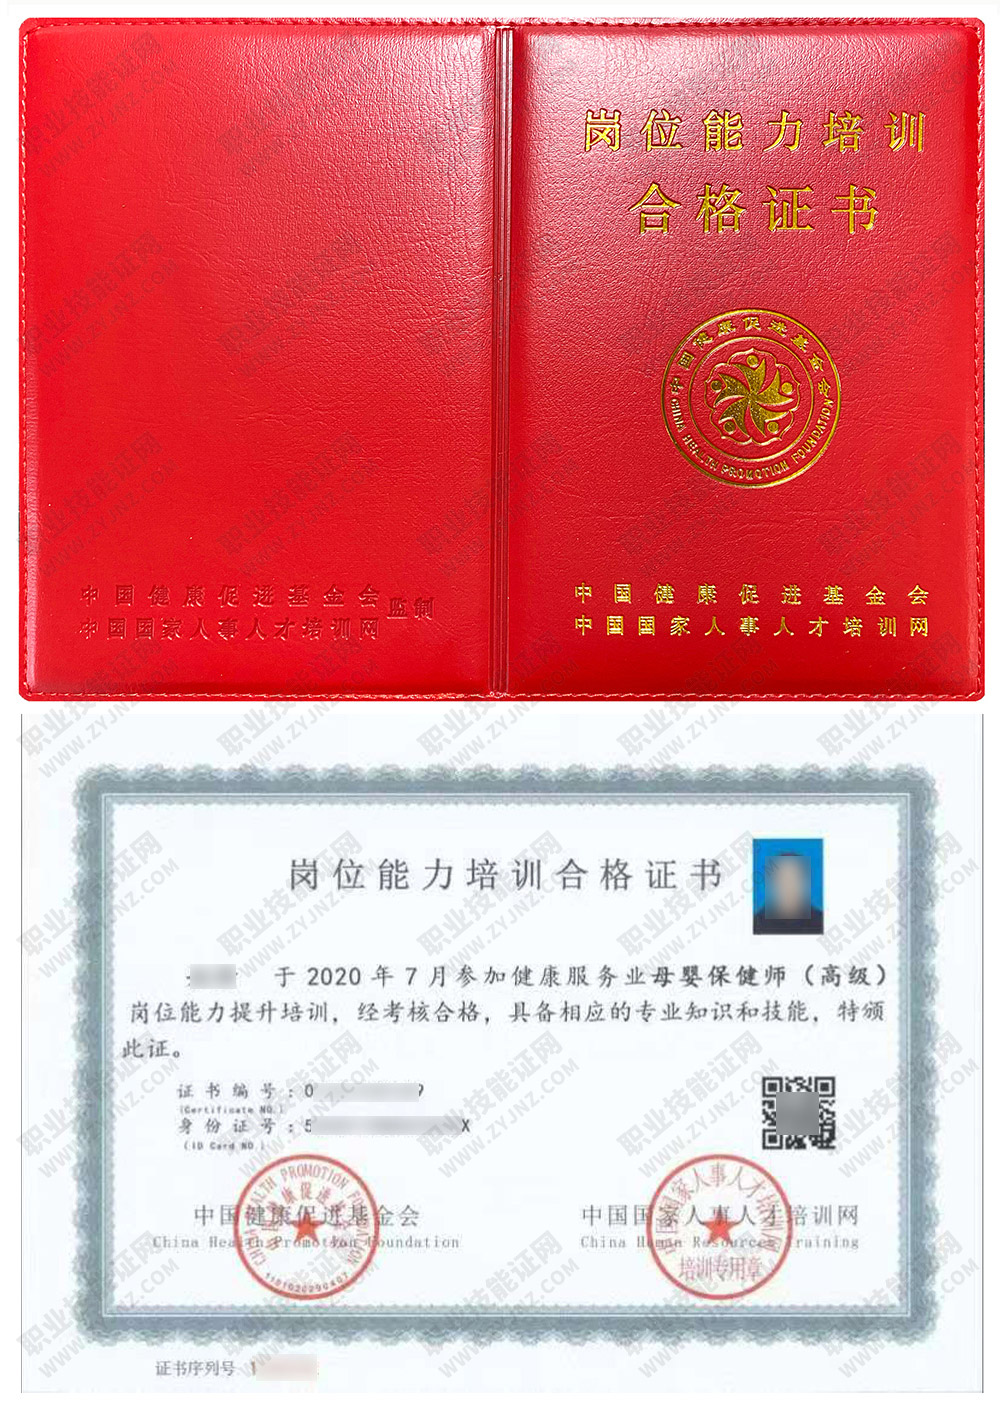 中国国家人事人才培训网 母婴保健师 岗位能力培训合格证书